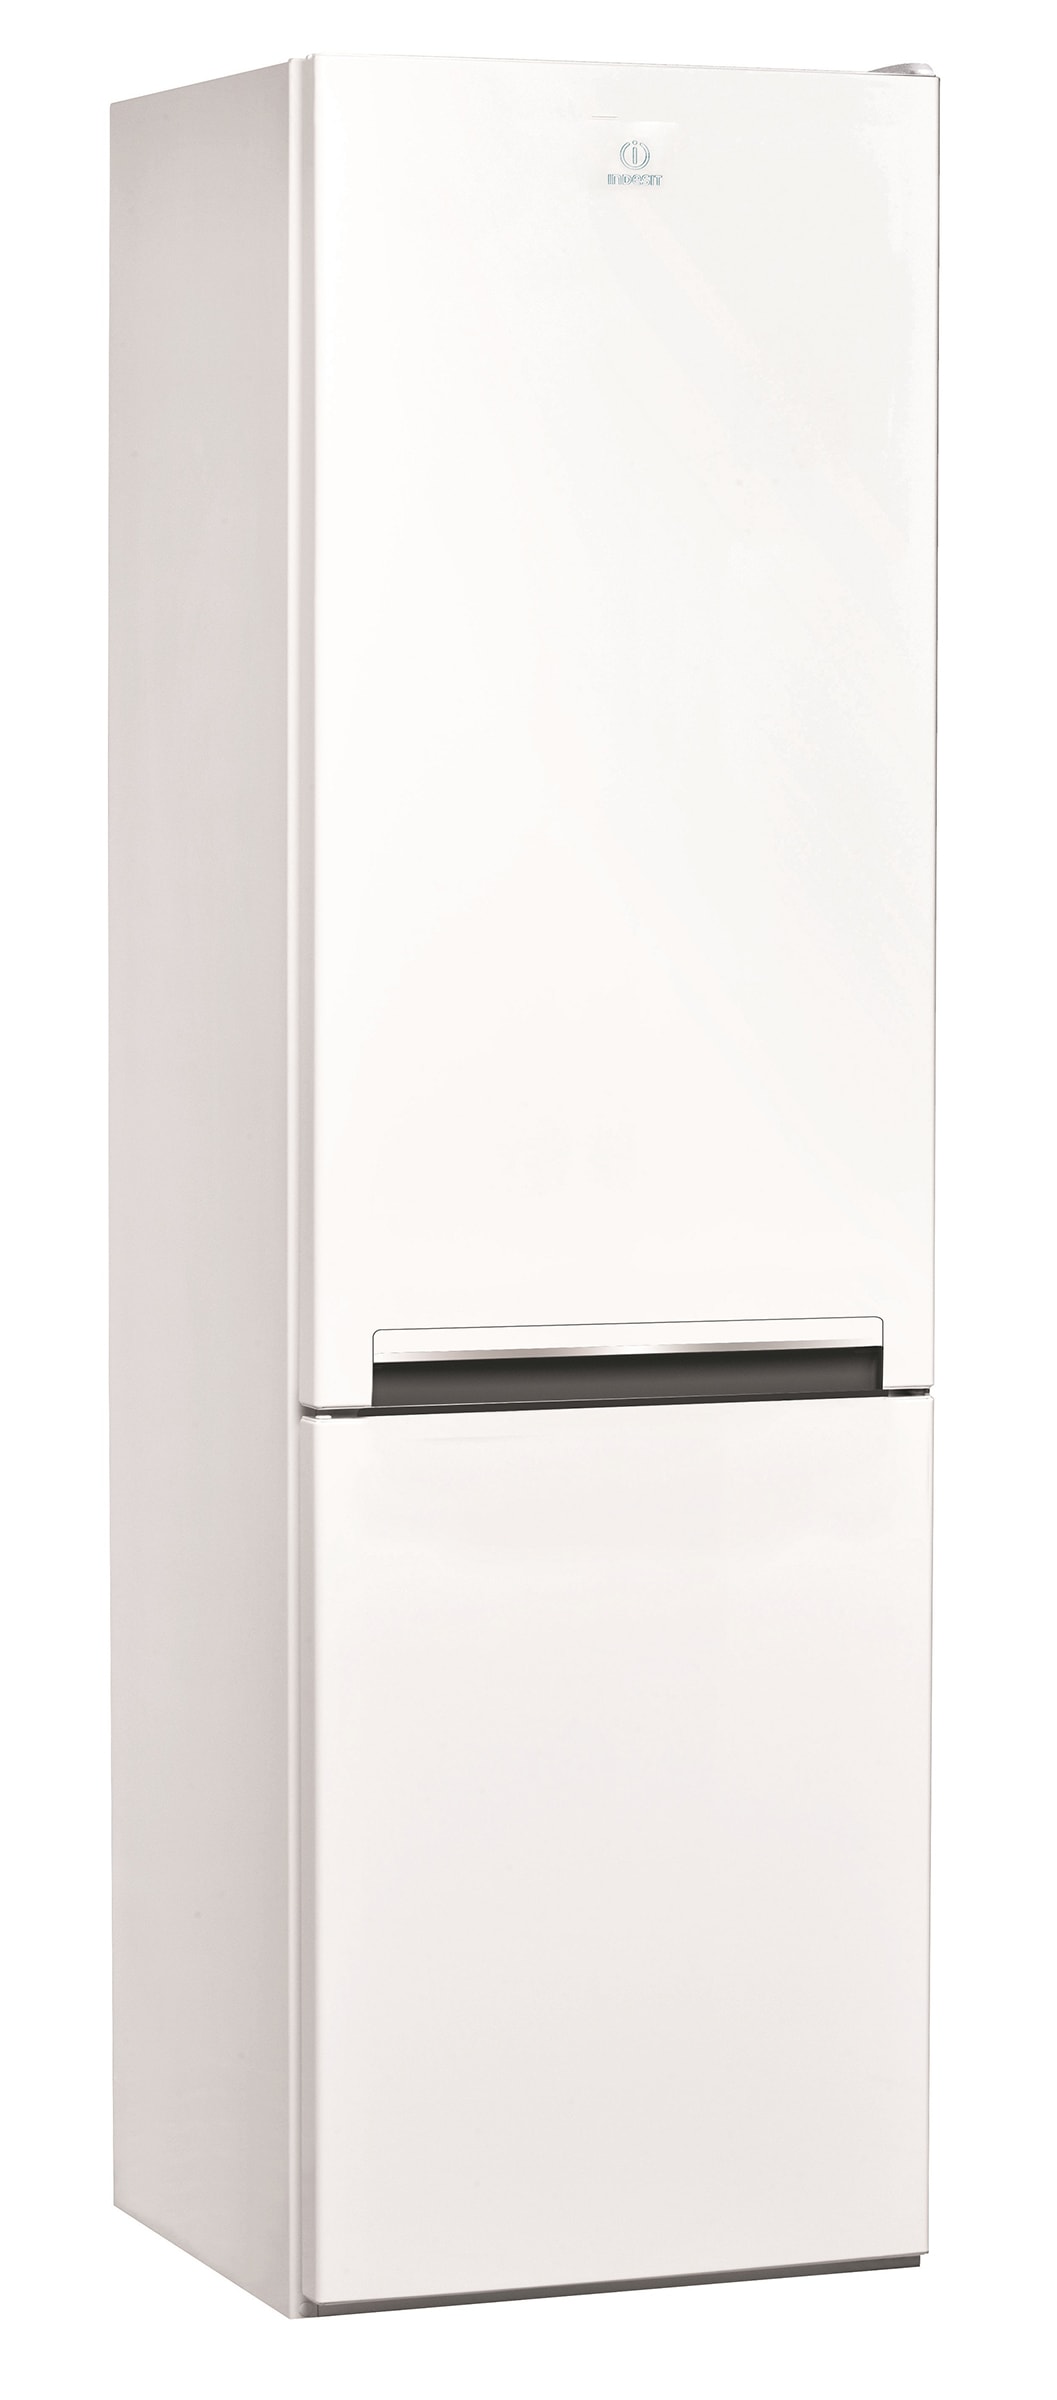 INDESIT Réfrigérateur congélateur bas 308 litres Blanc - LI7S2EWFR